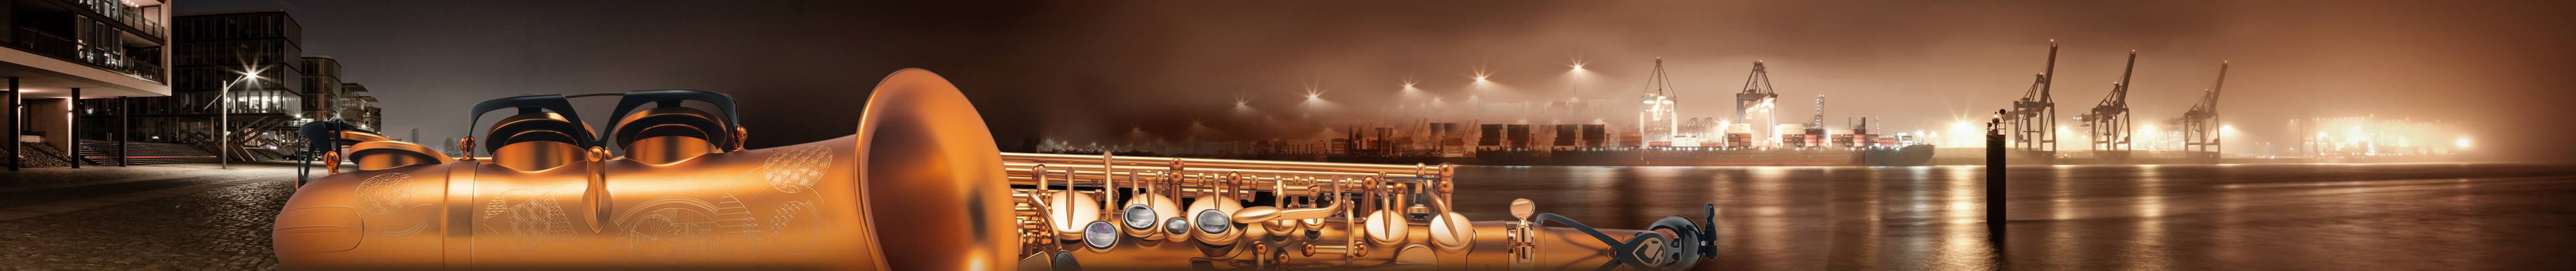 Saxophone in enormer Auswahl - viele Marken und Modelle in spannenden Ausführungen und Optiken